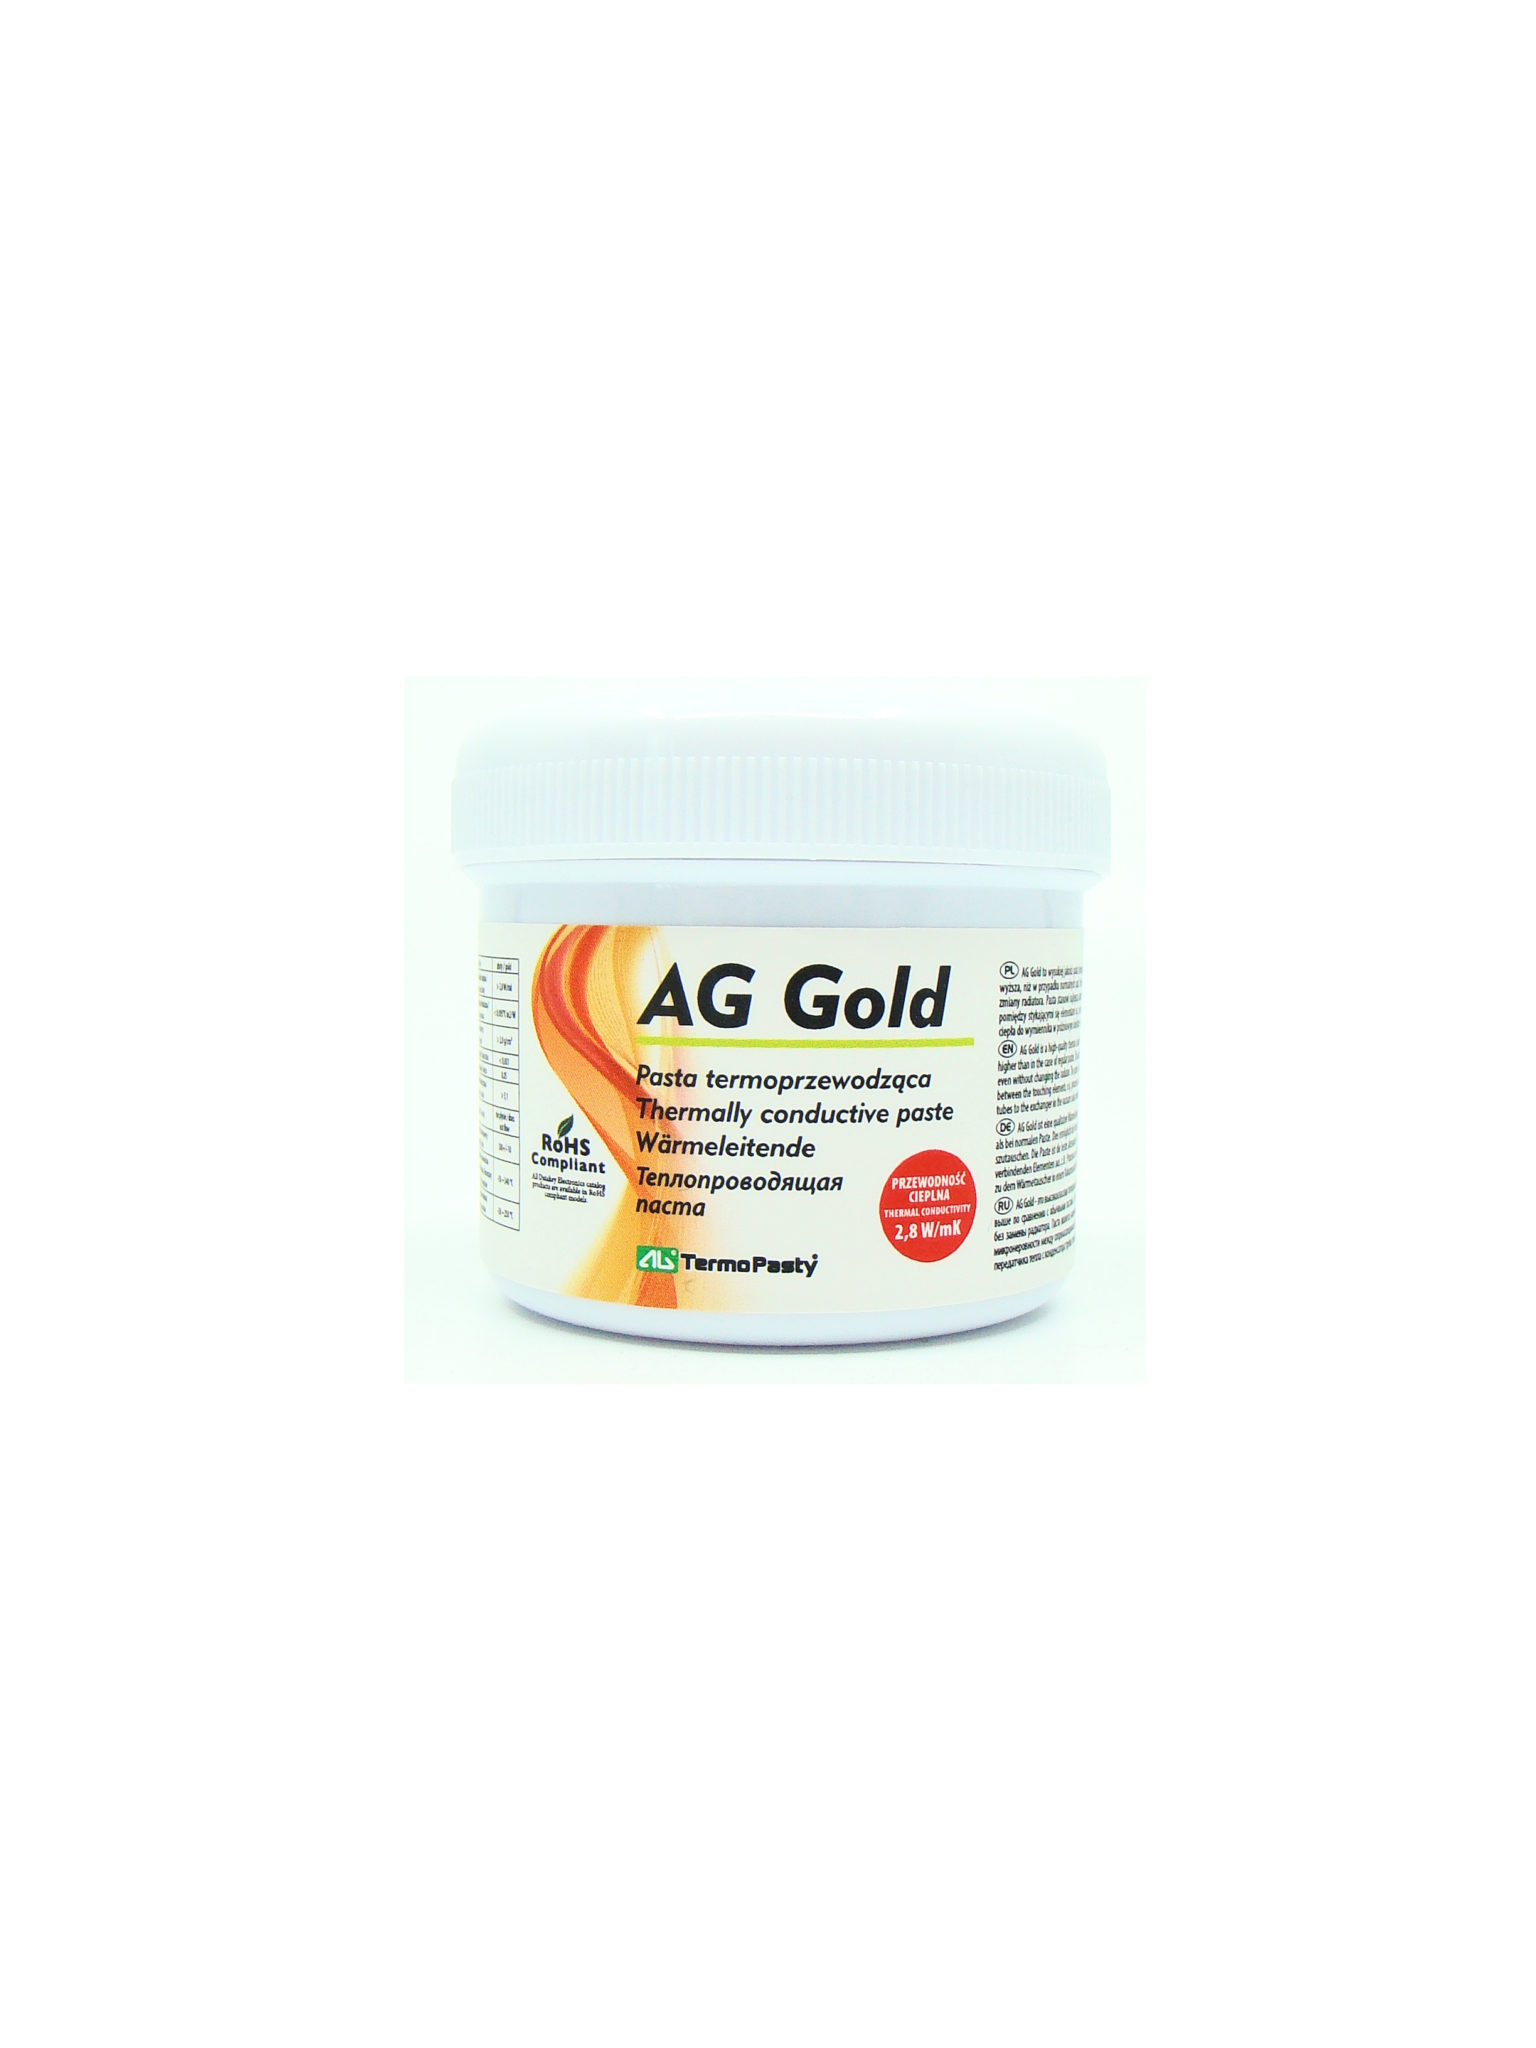 Pudełko AG Gold o pojemności 100g – pasta termoprzewodząca ze złotem.